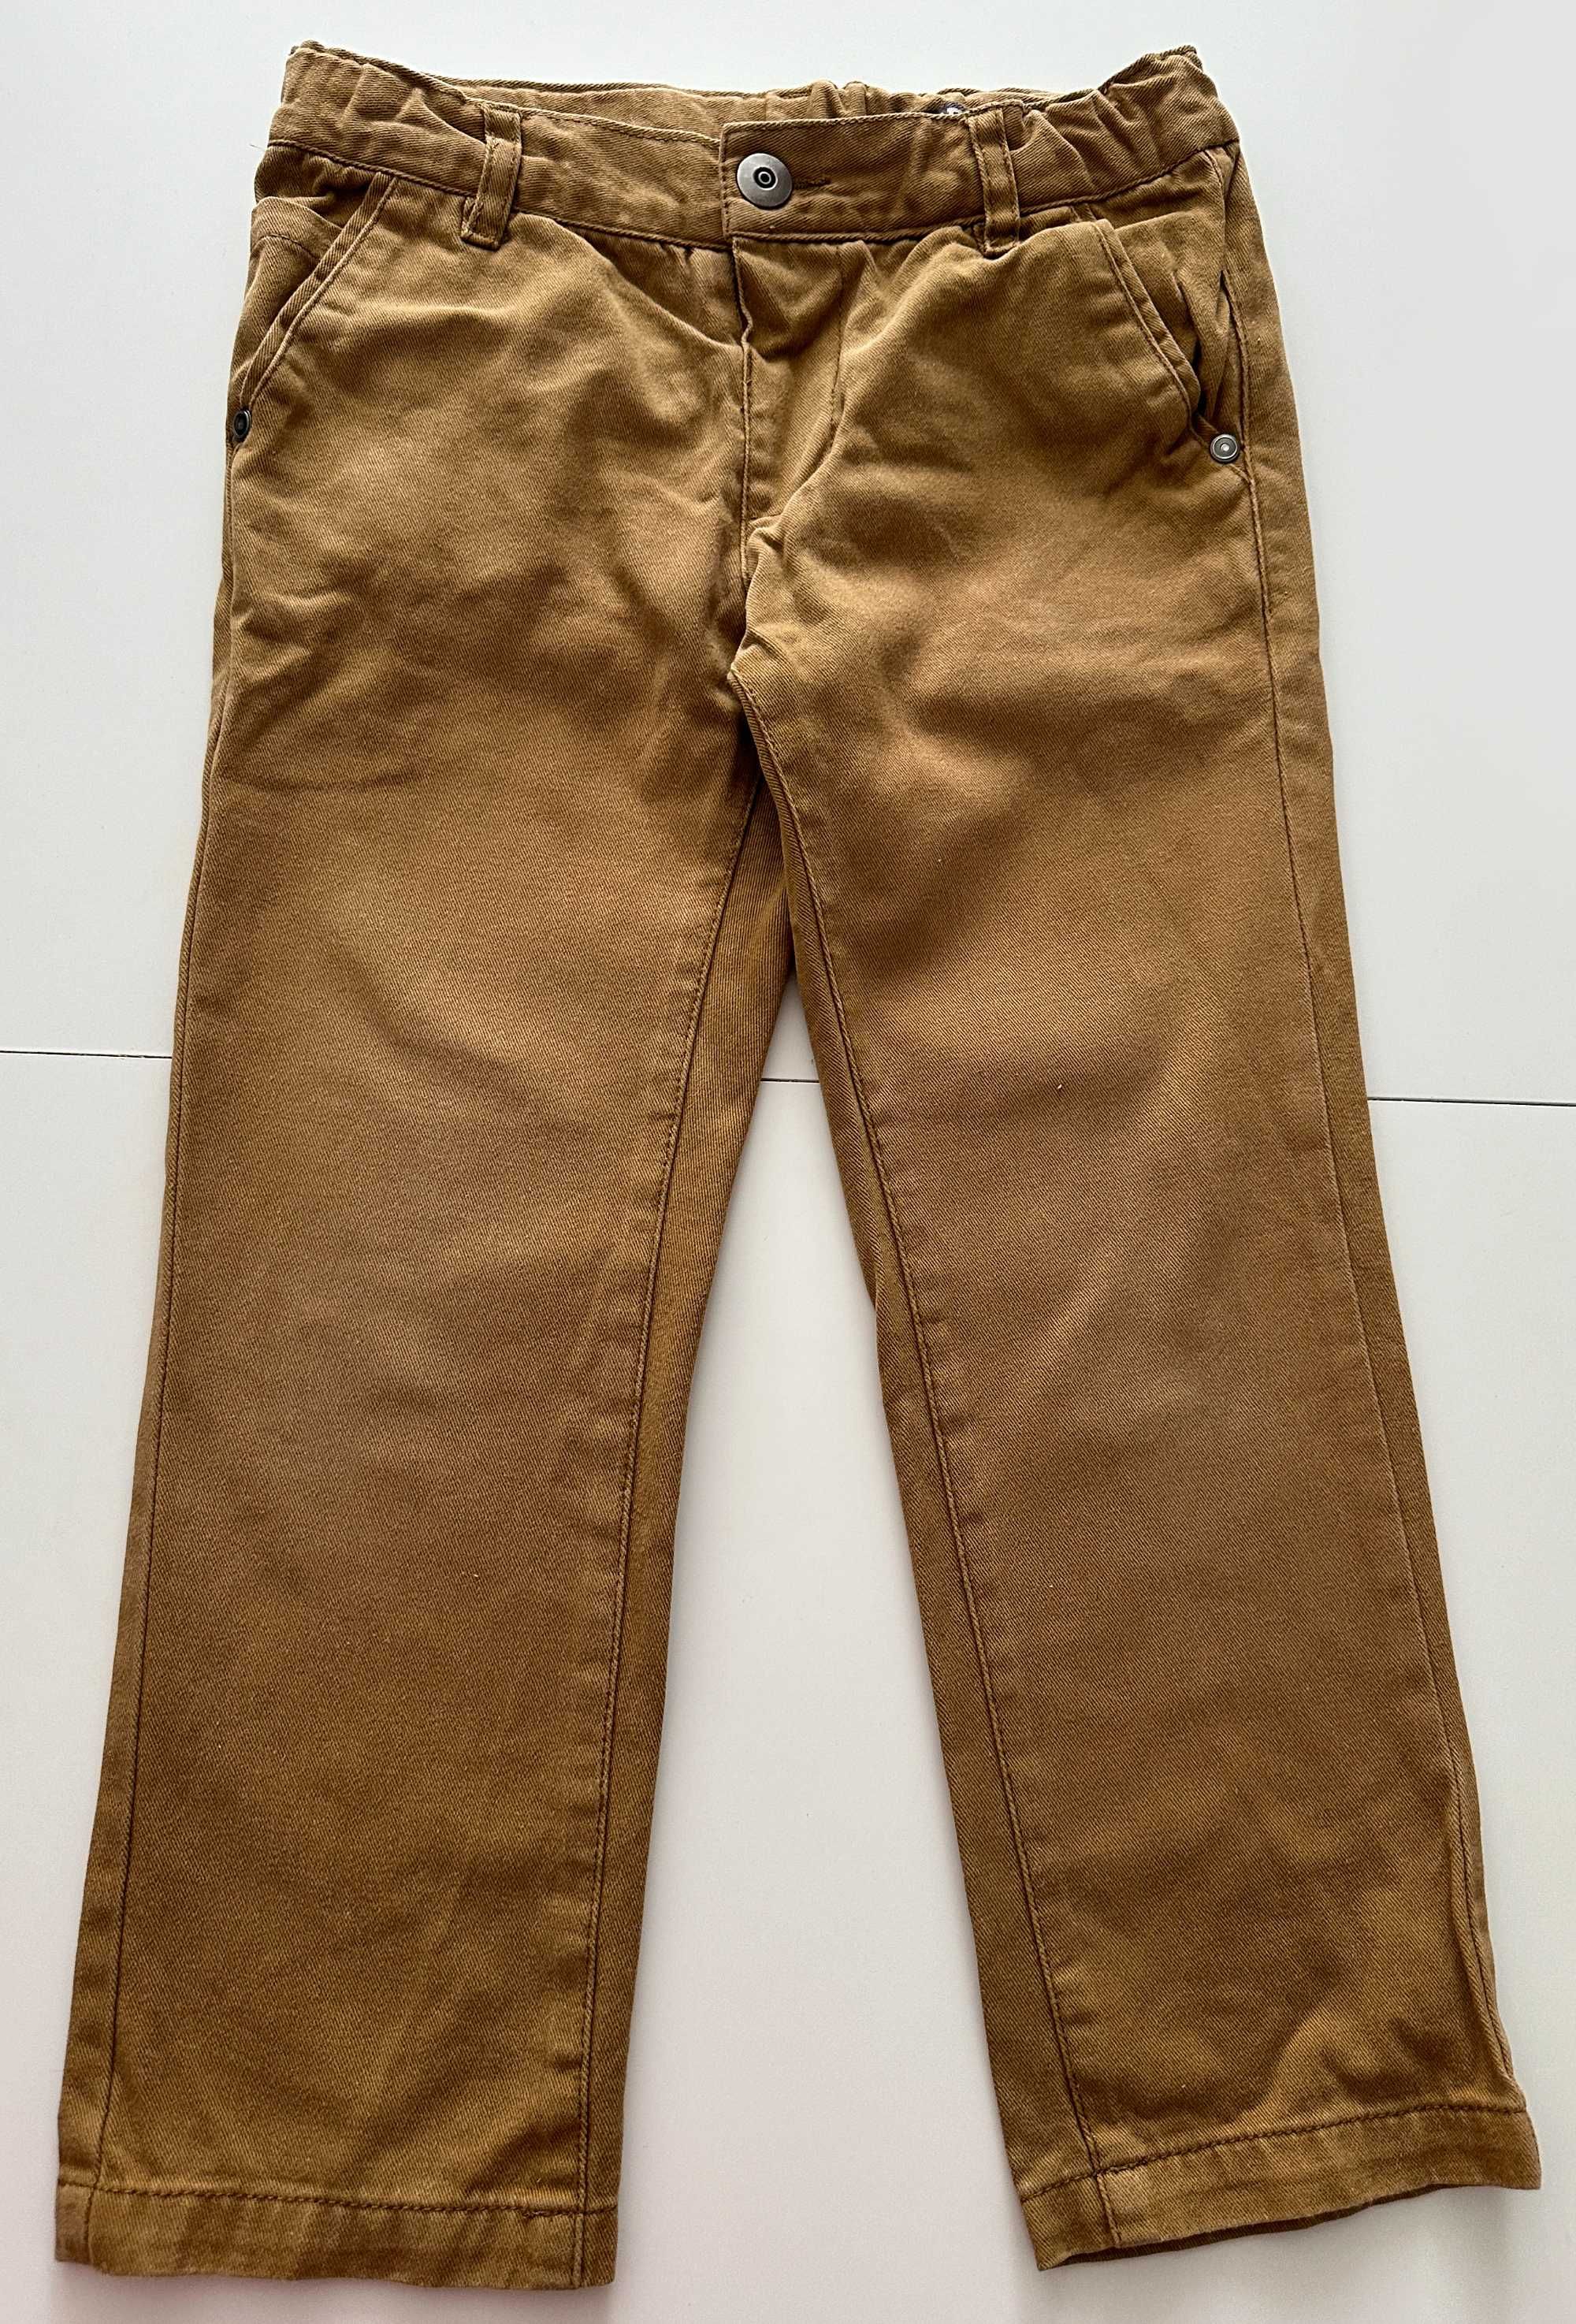 Идеальные штаны штанишки брюки джинсы Chicco chicco, 110р